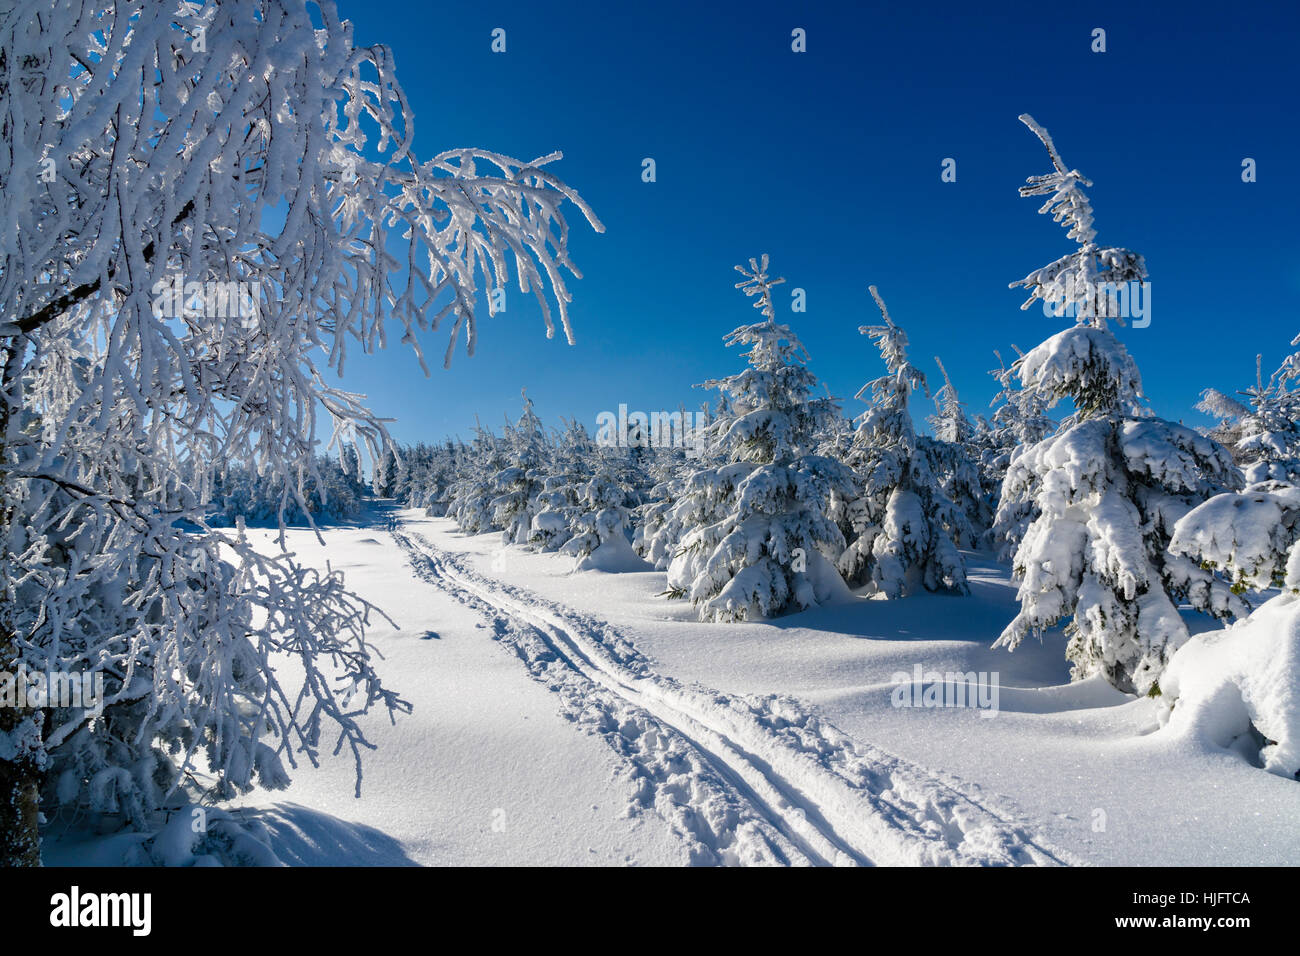 Paysage avec des arbres d'hiver, givre, neige et une piste de ski dans la région de Nordjylland Banque D'Images